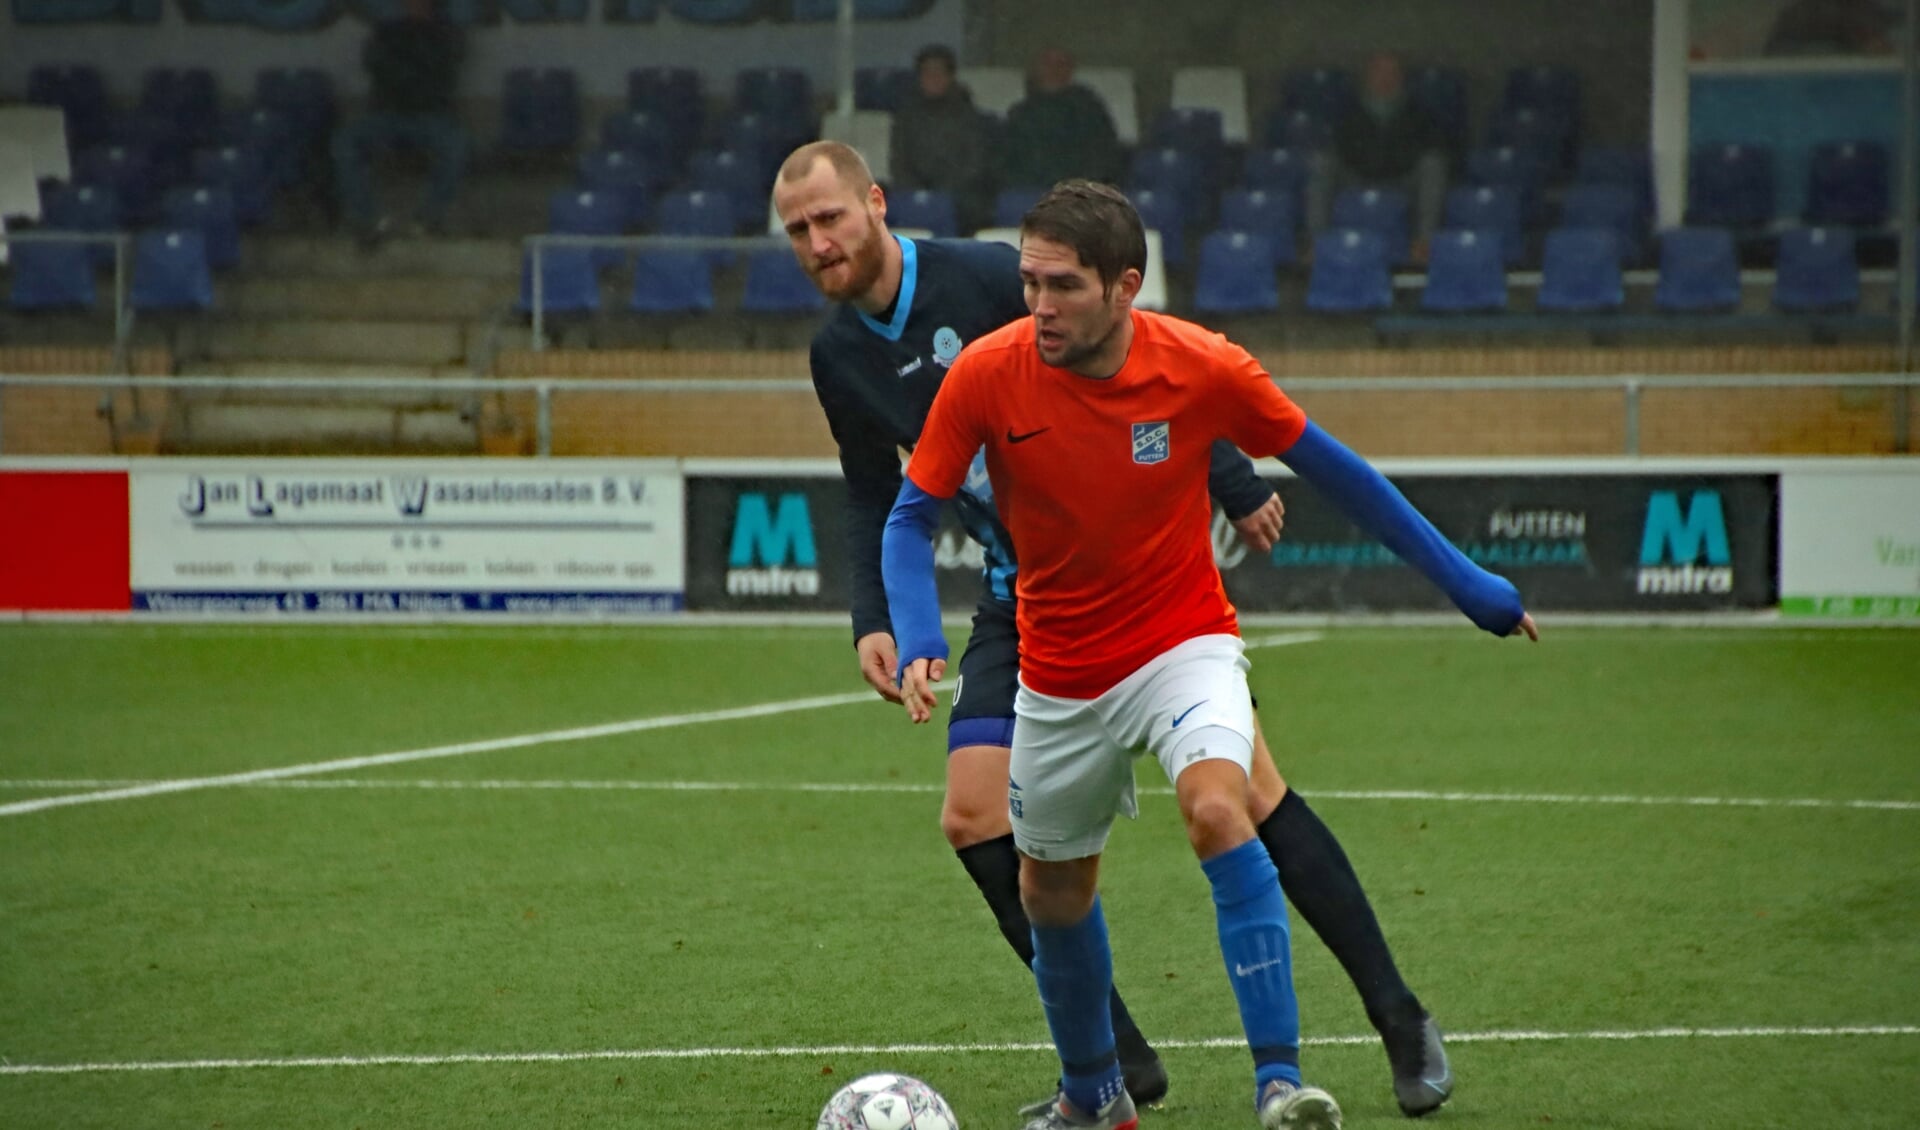 SDC Putten-middenvelder Vincent ter Burg (oranje shirt) in duel met Eef van Riel van v.v. Scherpenzeel.